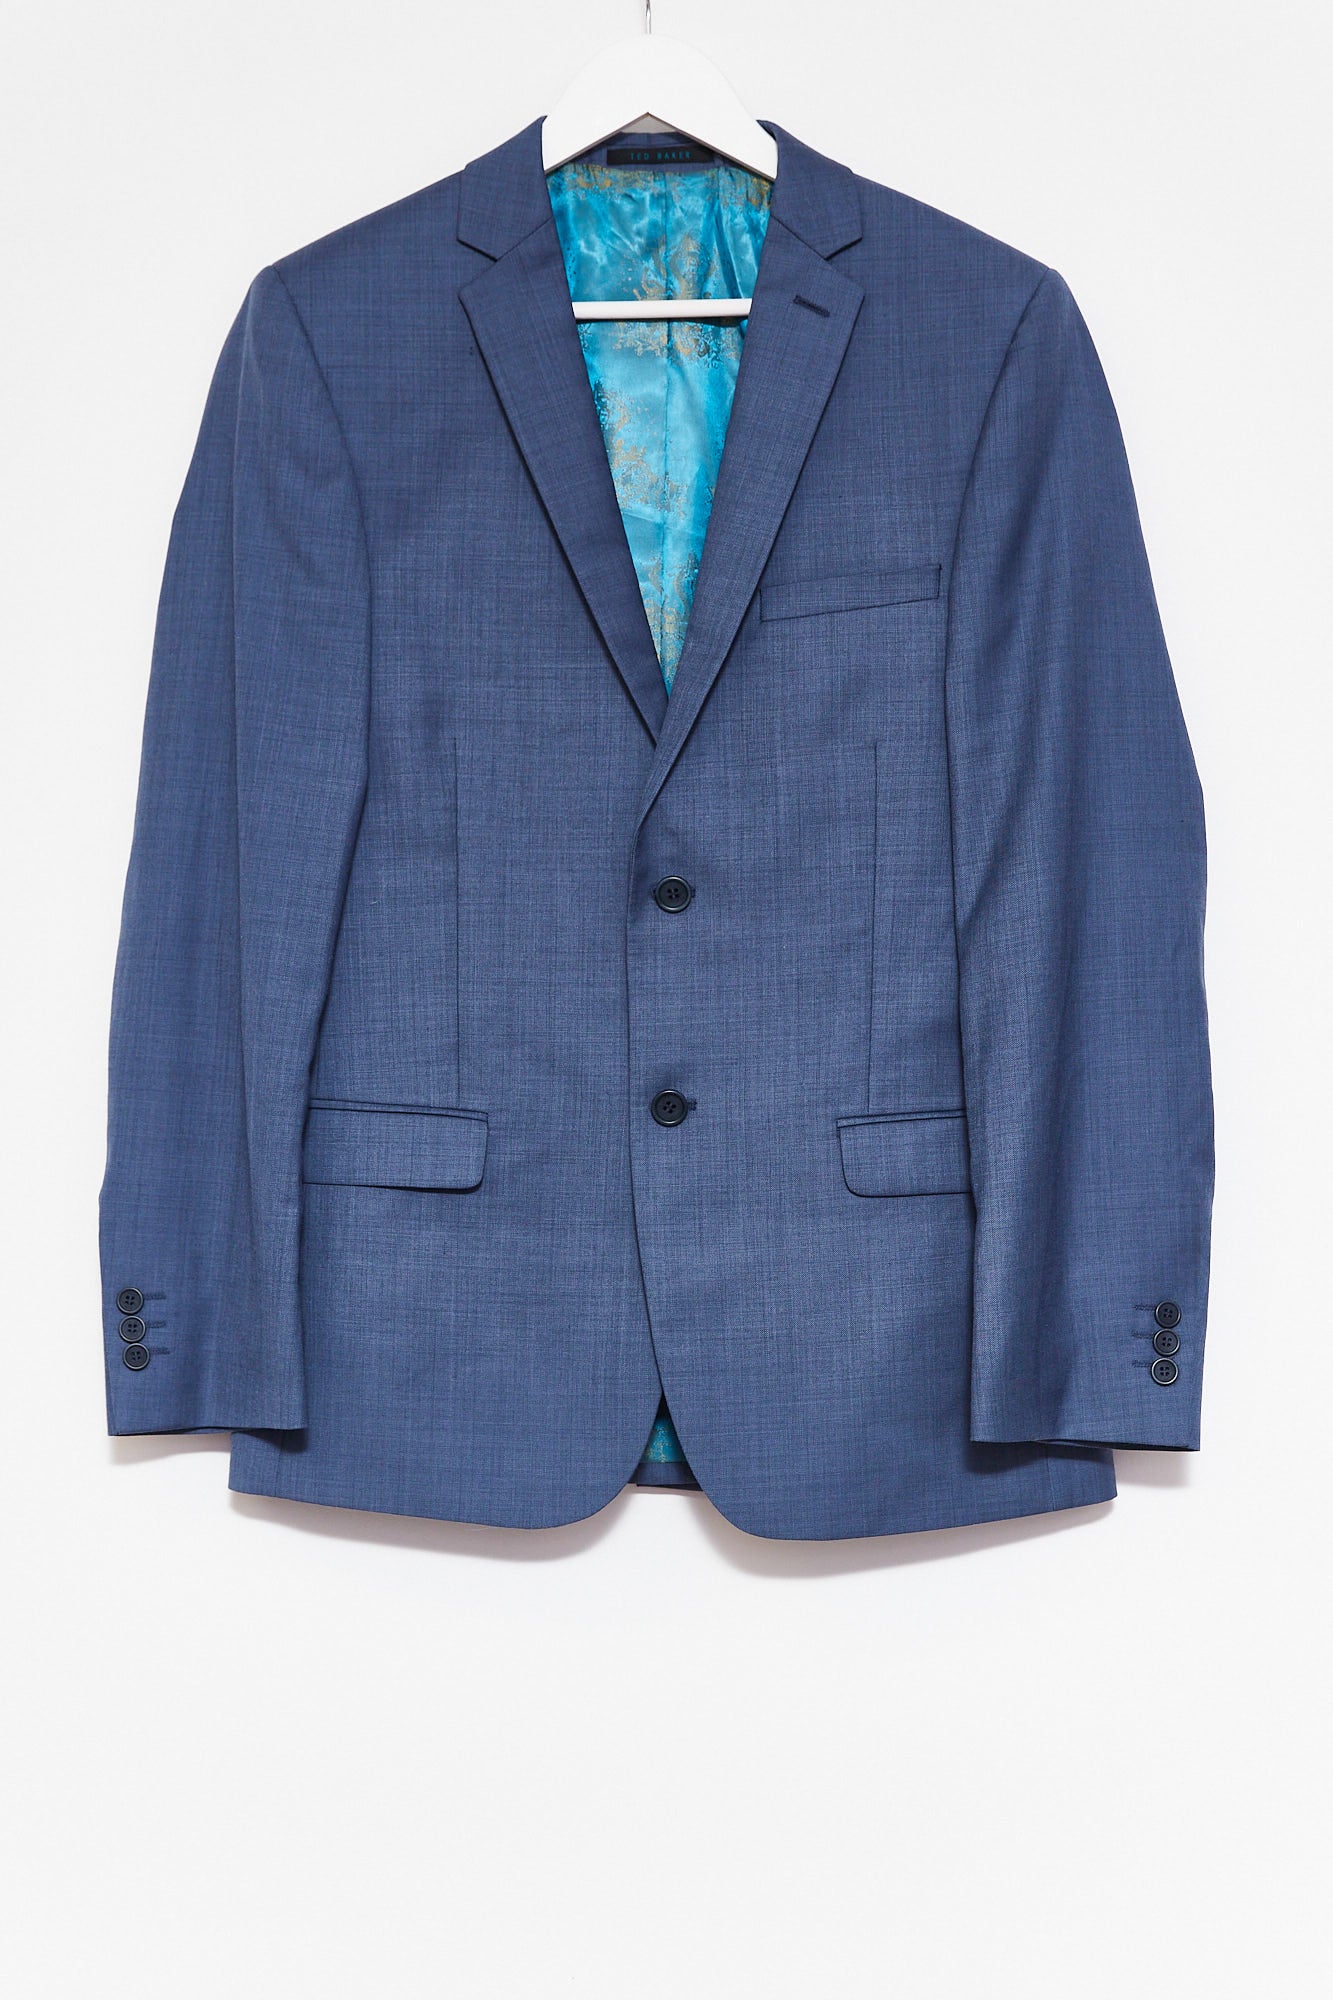 Mens Ted Baker Blue Suit size Chest 38 W32 L32